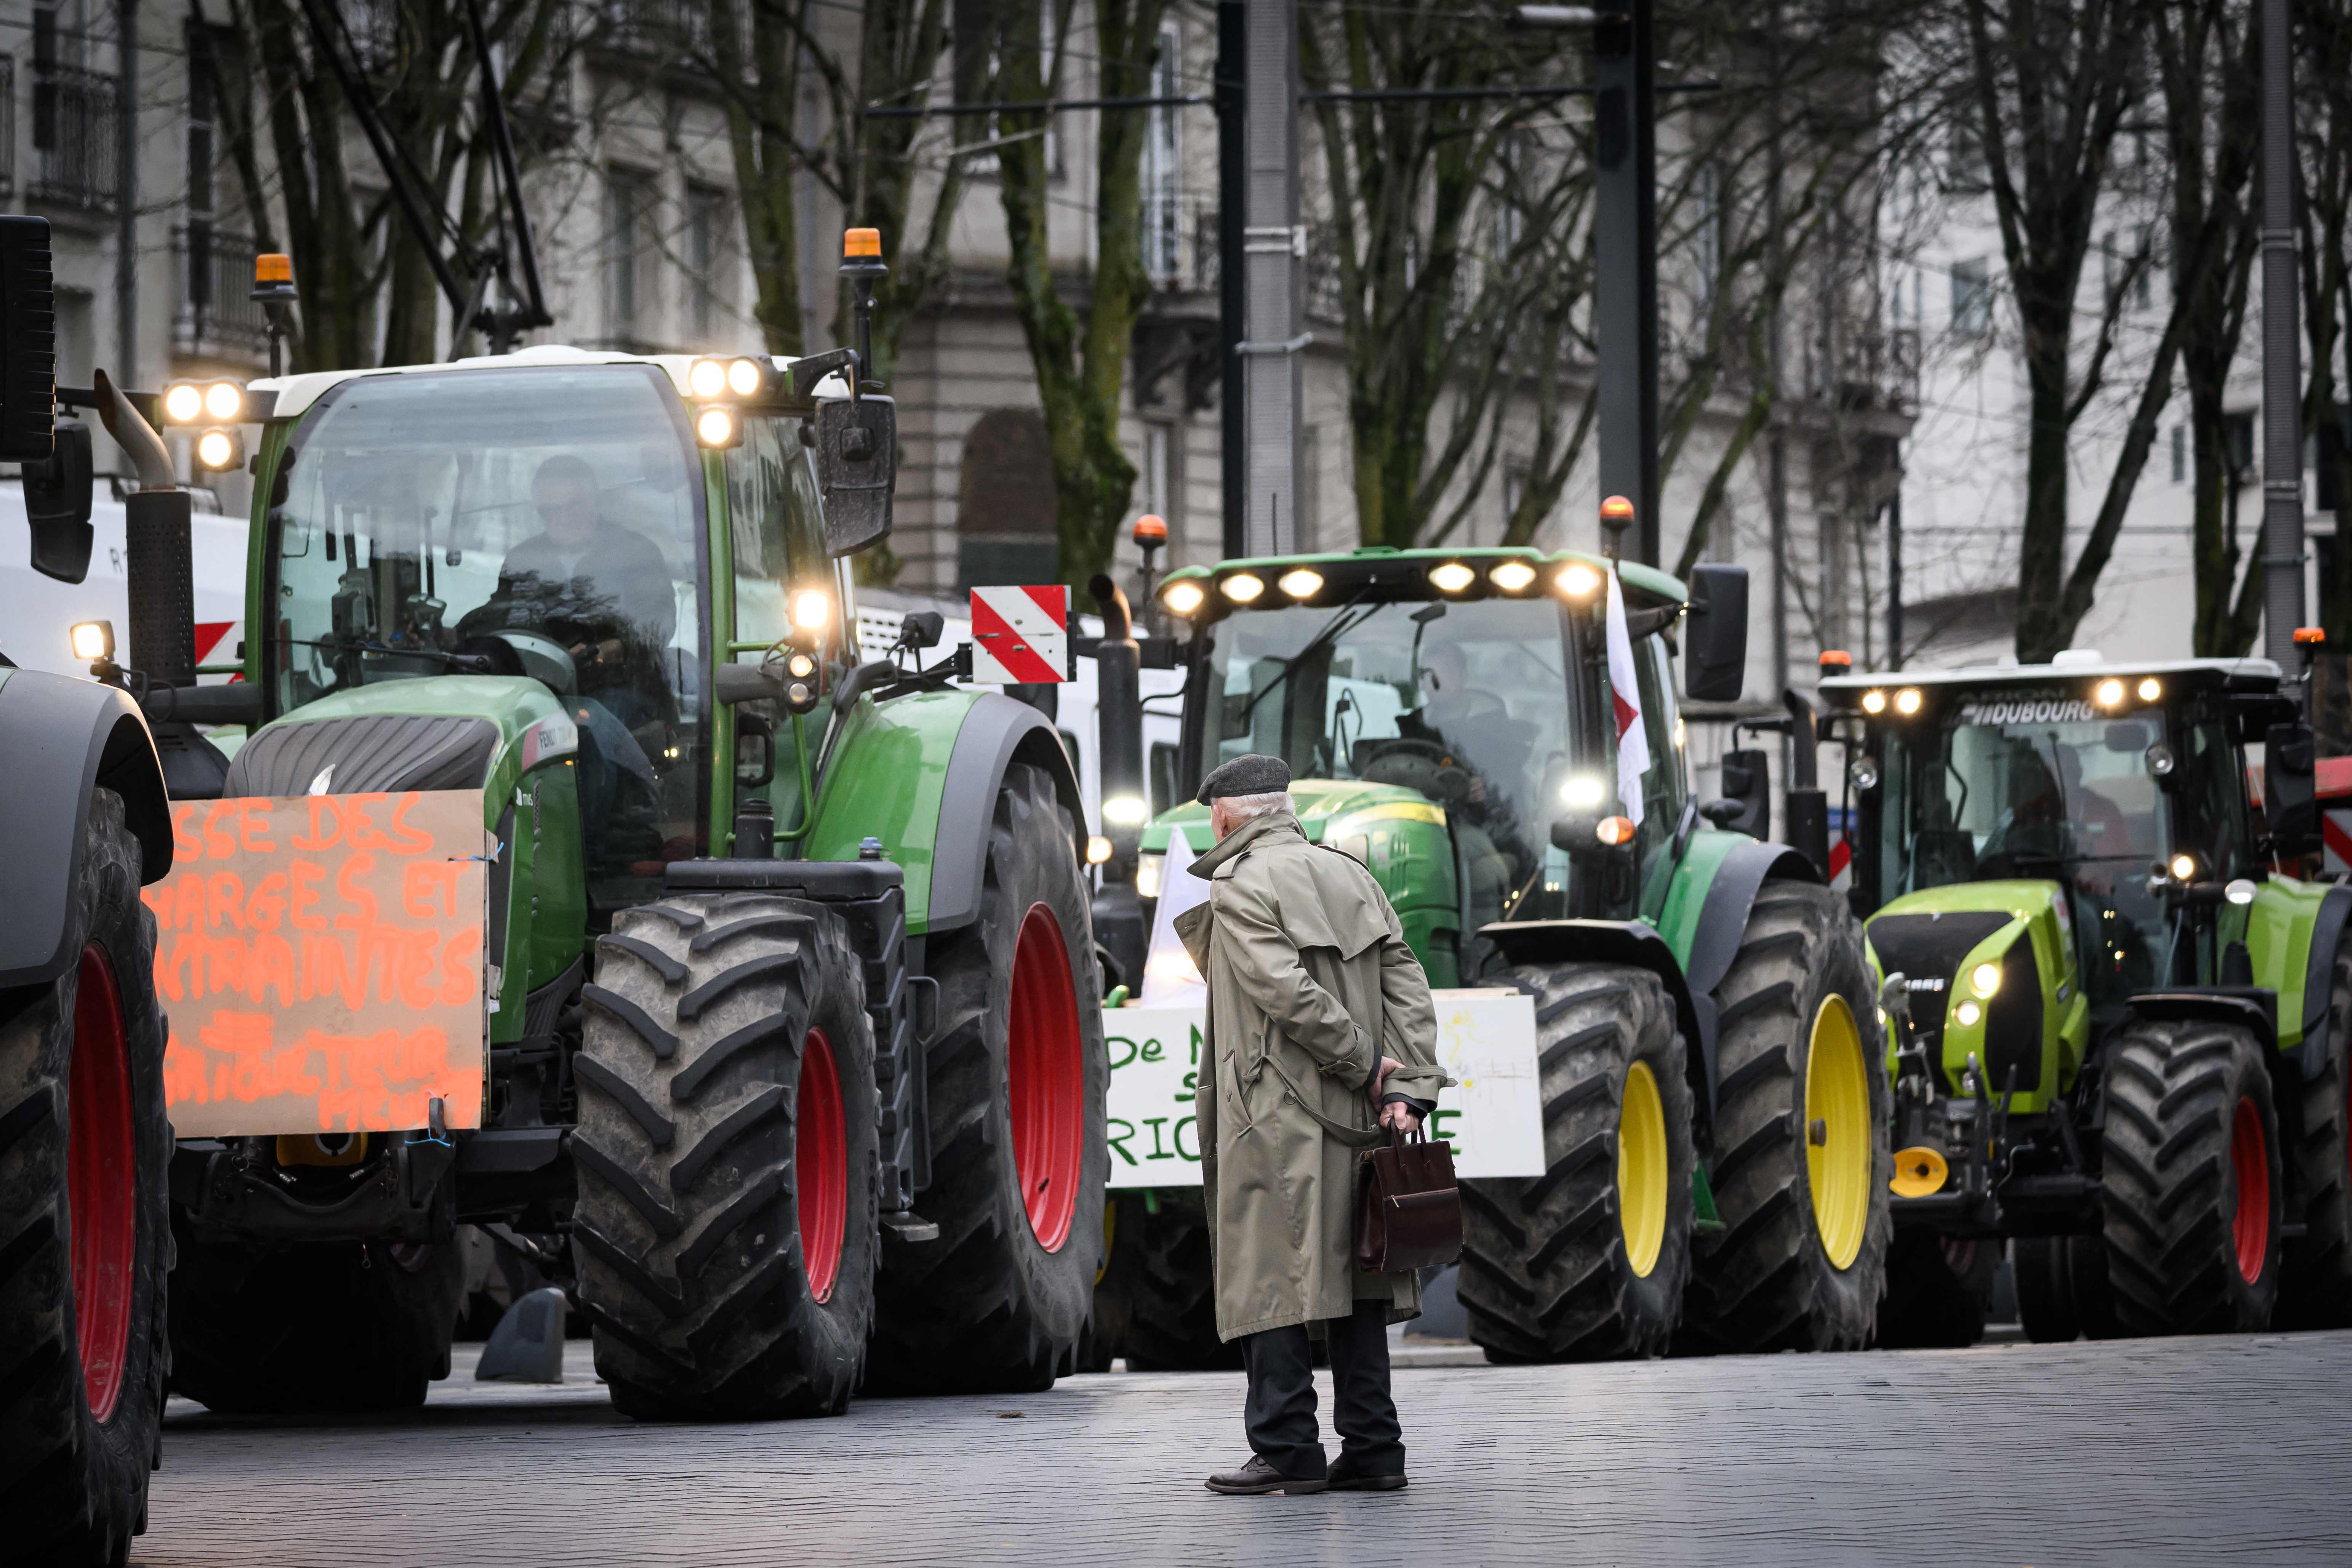 Des agriculteurs manifesteront dans le centre-ville de Liège ce